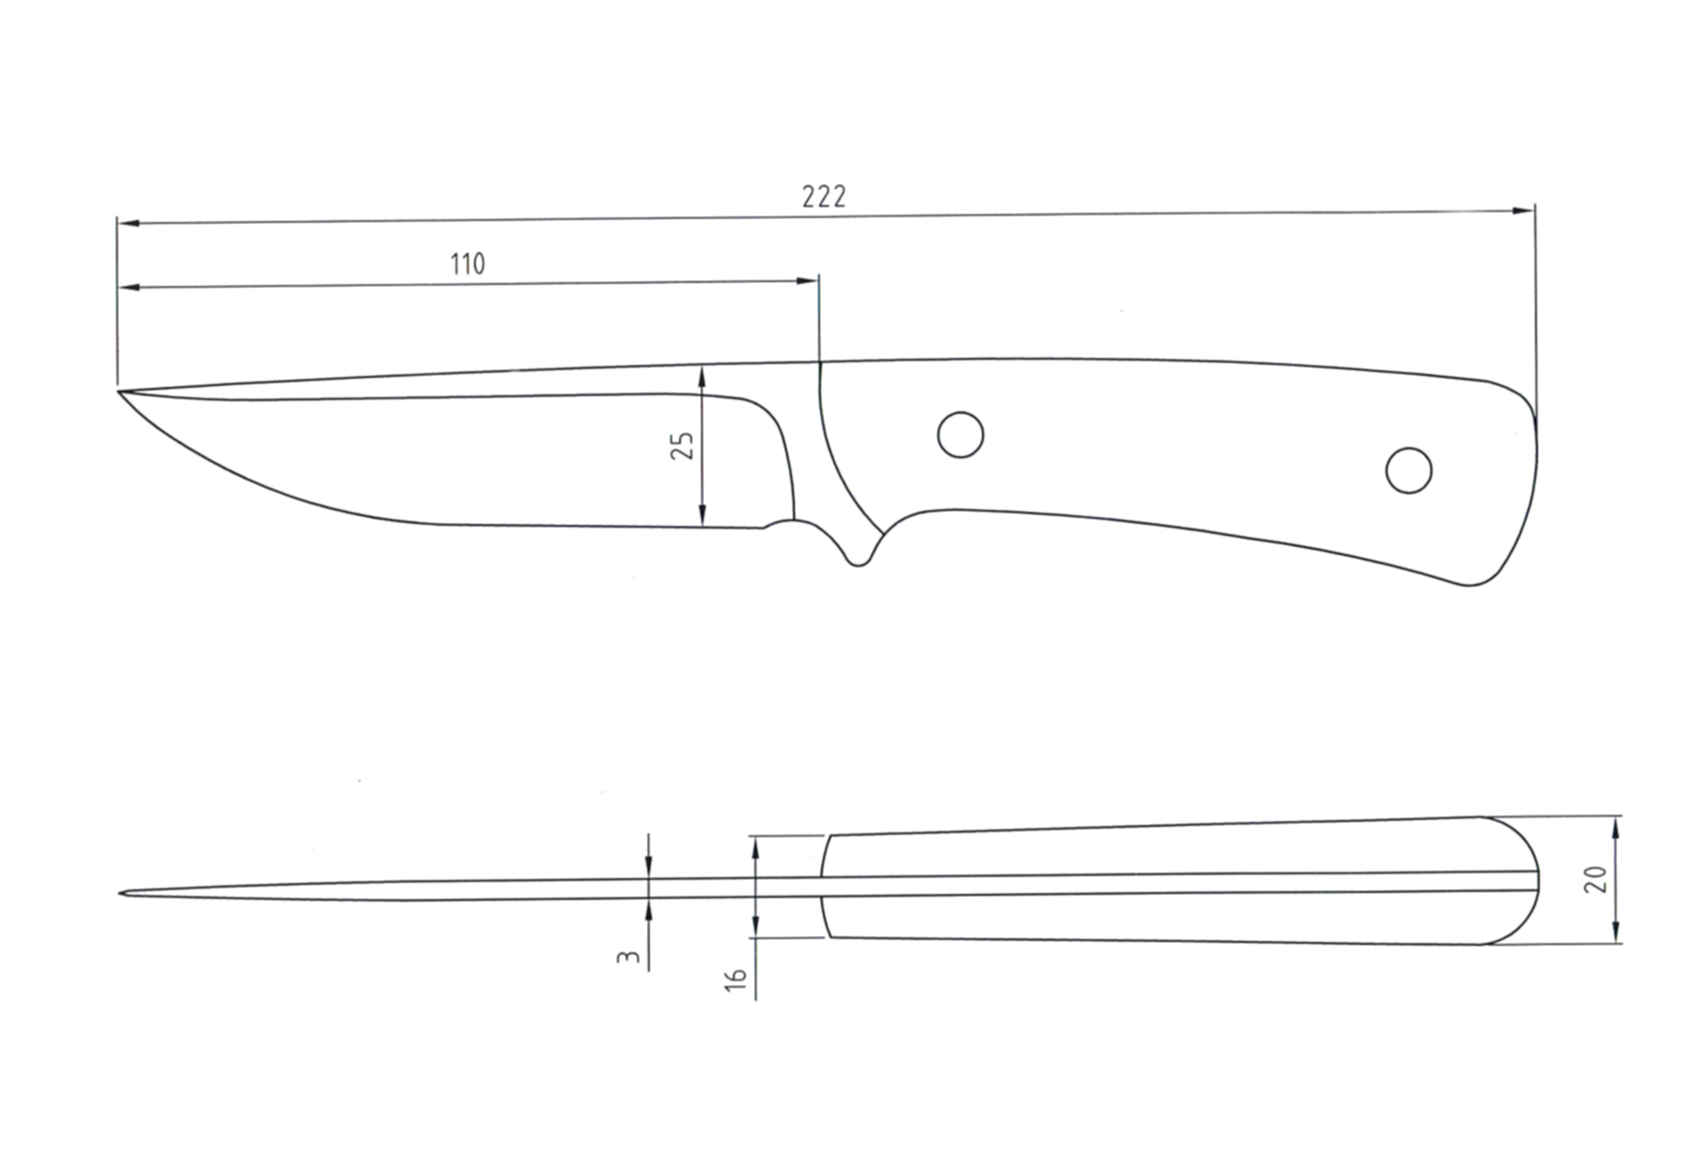 Размеры лезвий ножей